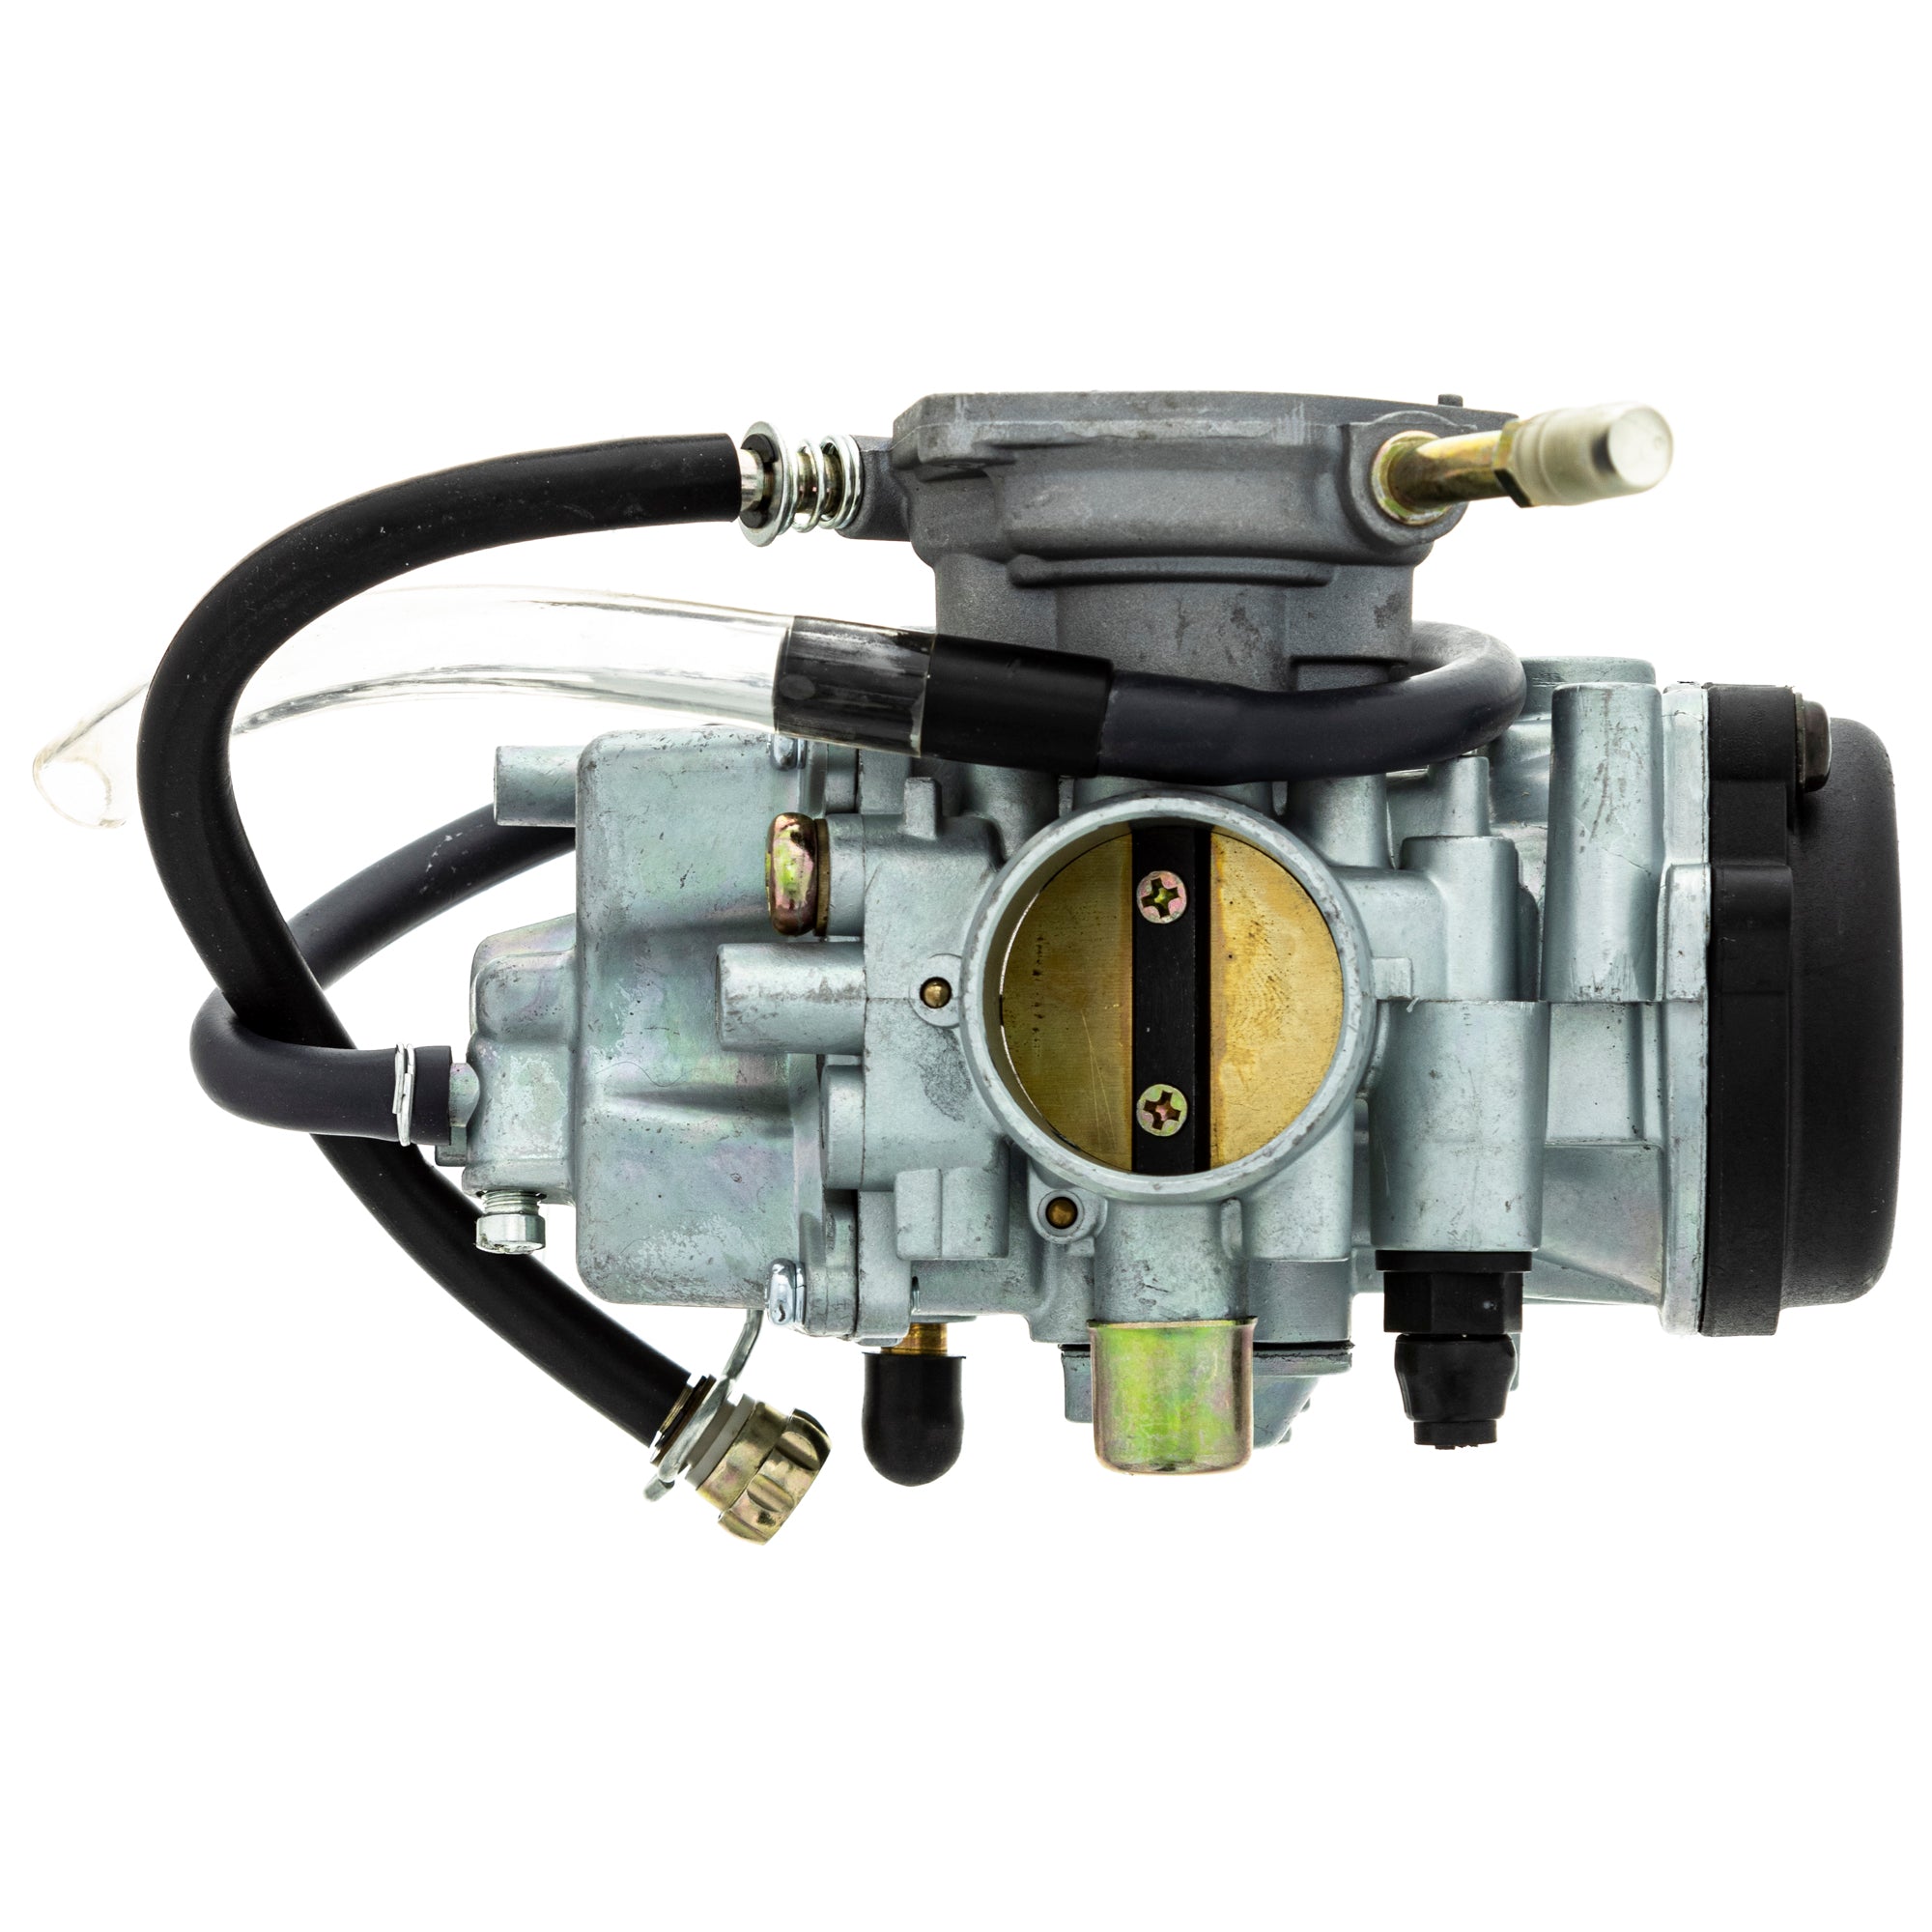 Carburetor Assembly 519-KCR2225B For Yamaha 5UH-E4101-11-00 5UH-E4101-10-00 5UH-E4101-01-00